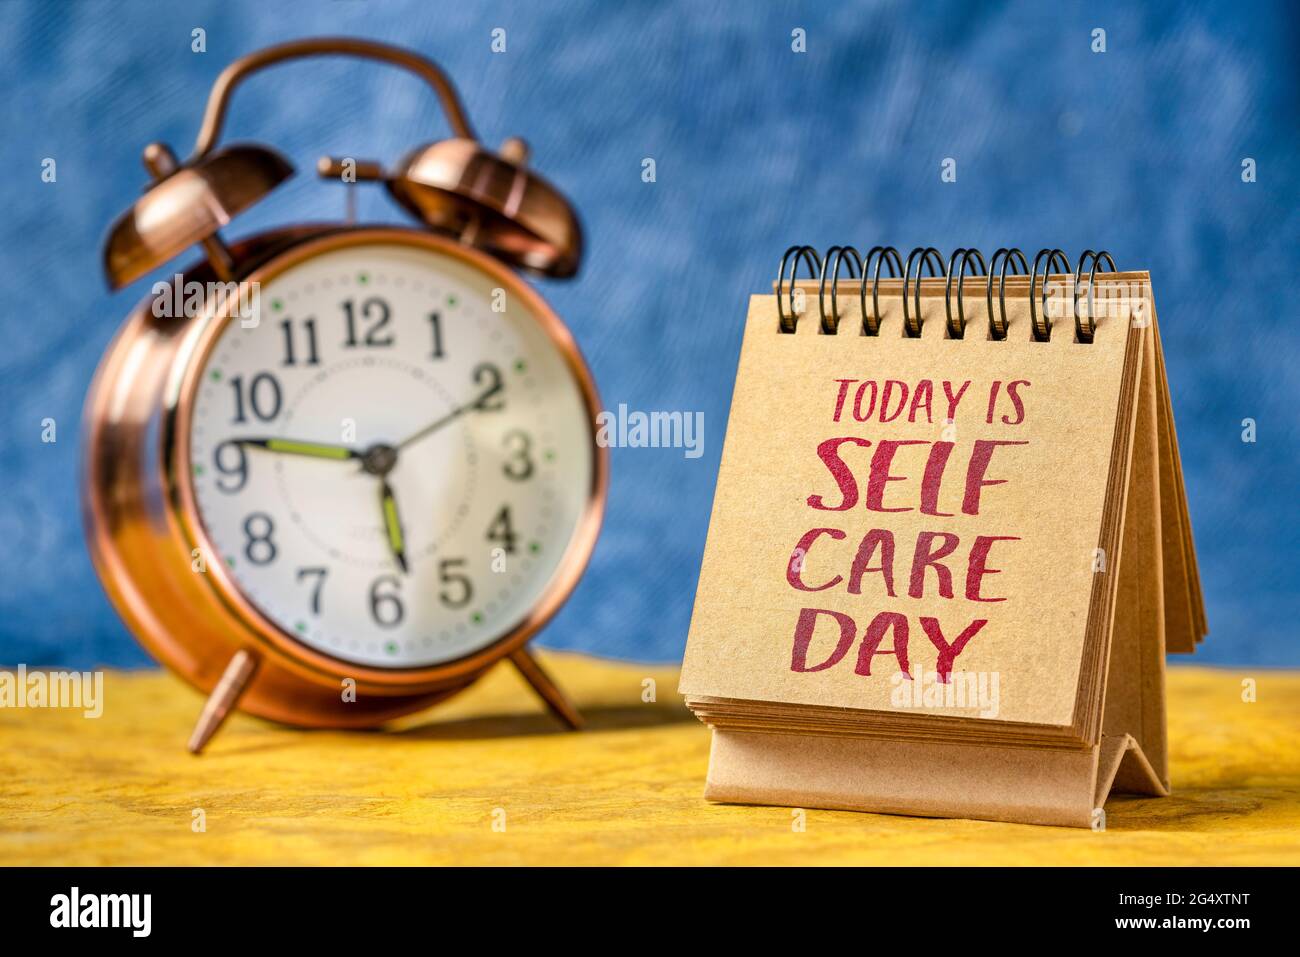 Heute ist Self-Care-Tag Erinnerung - Handschrift in einem Desktop-Kalender mit Wecker, geistige, emotionale und körperliche Gesundheit Konzept Stockfoto